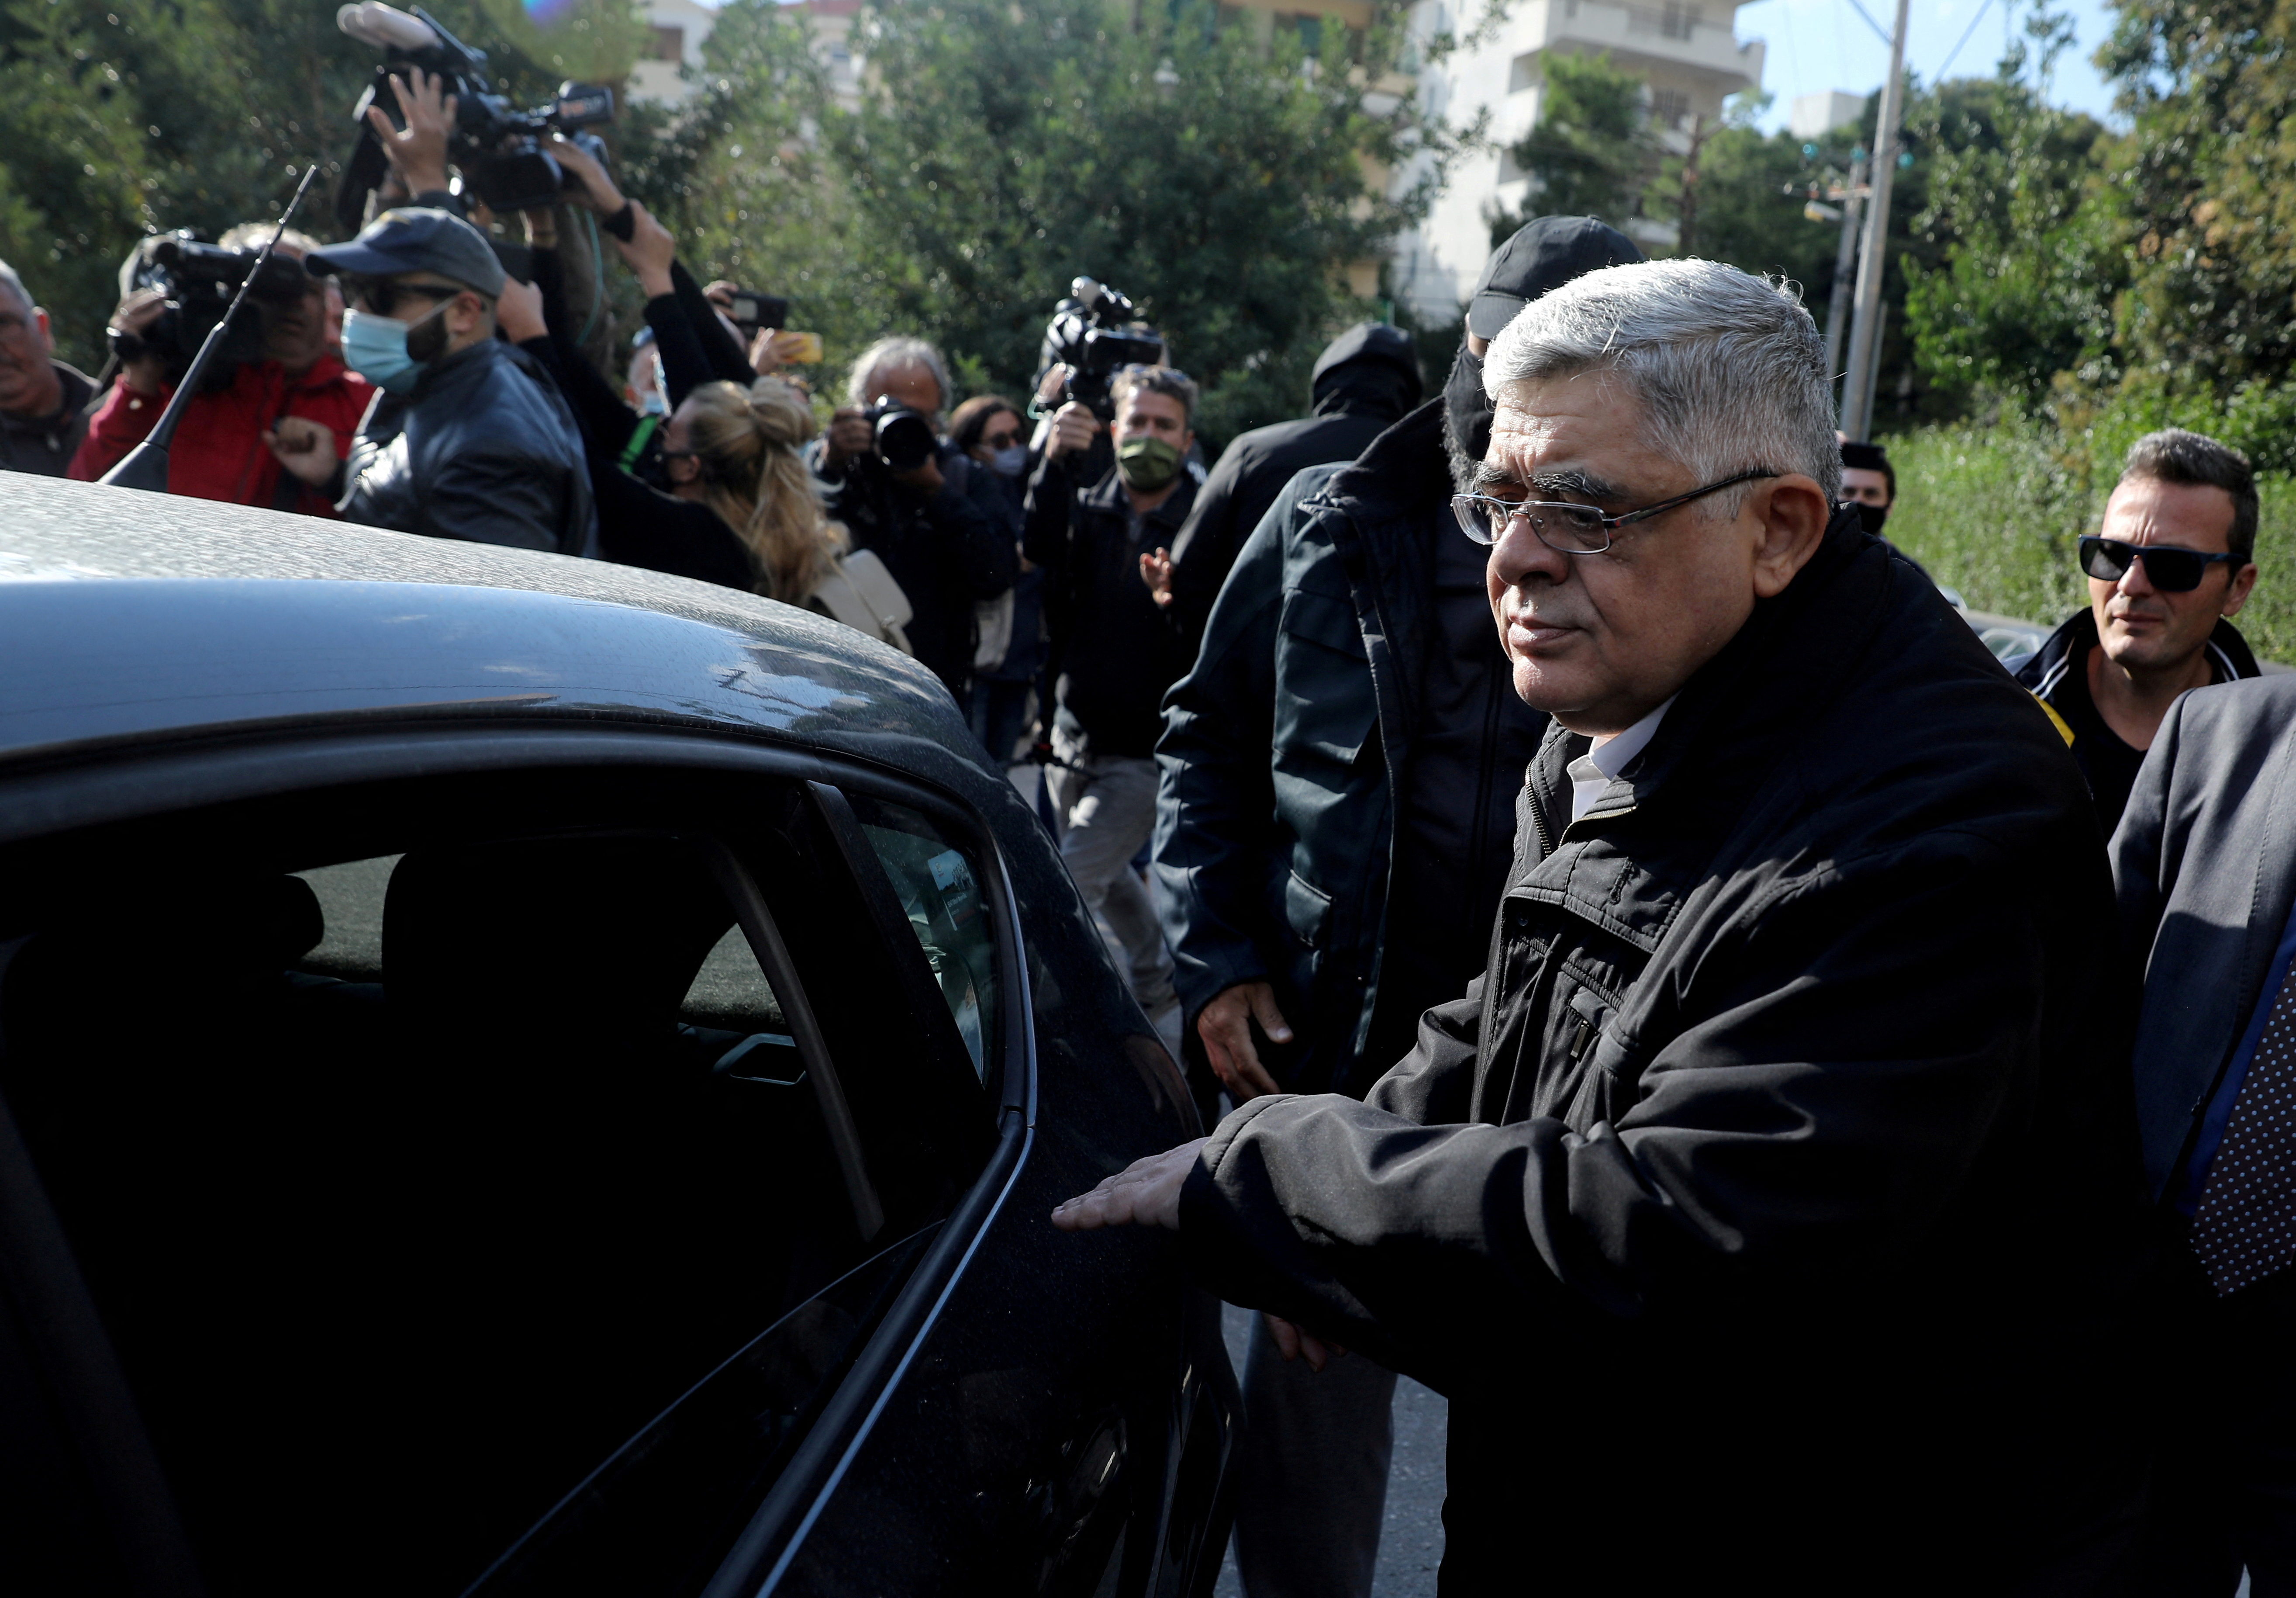 Nikos Mihaloliakos, leader of Greece's far-right Golden Dawn party